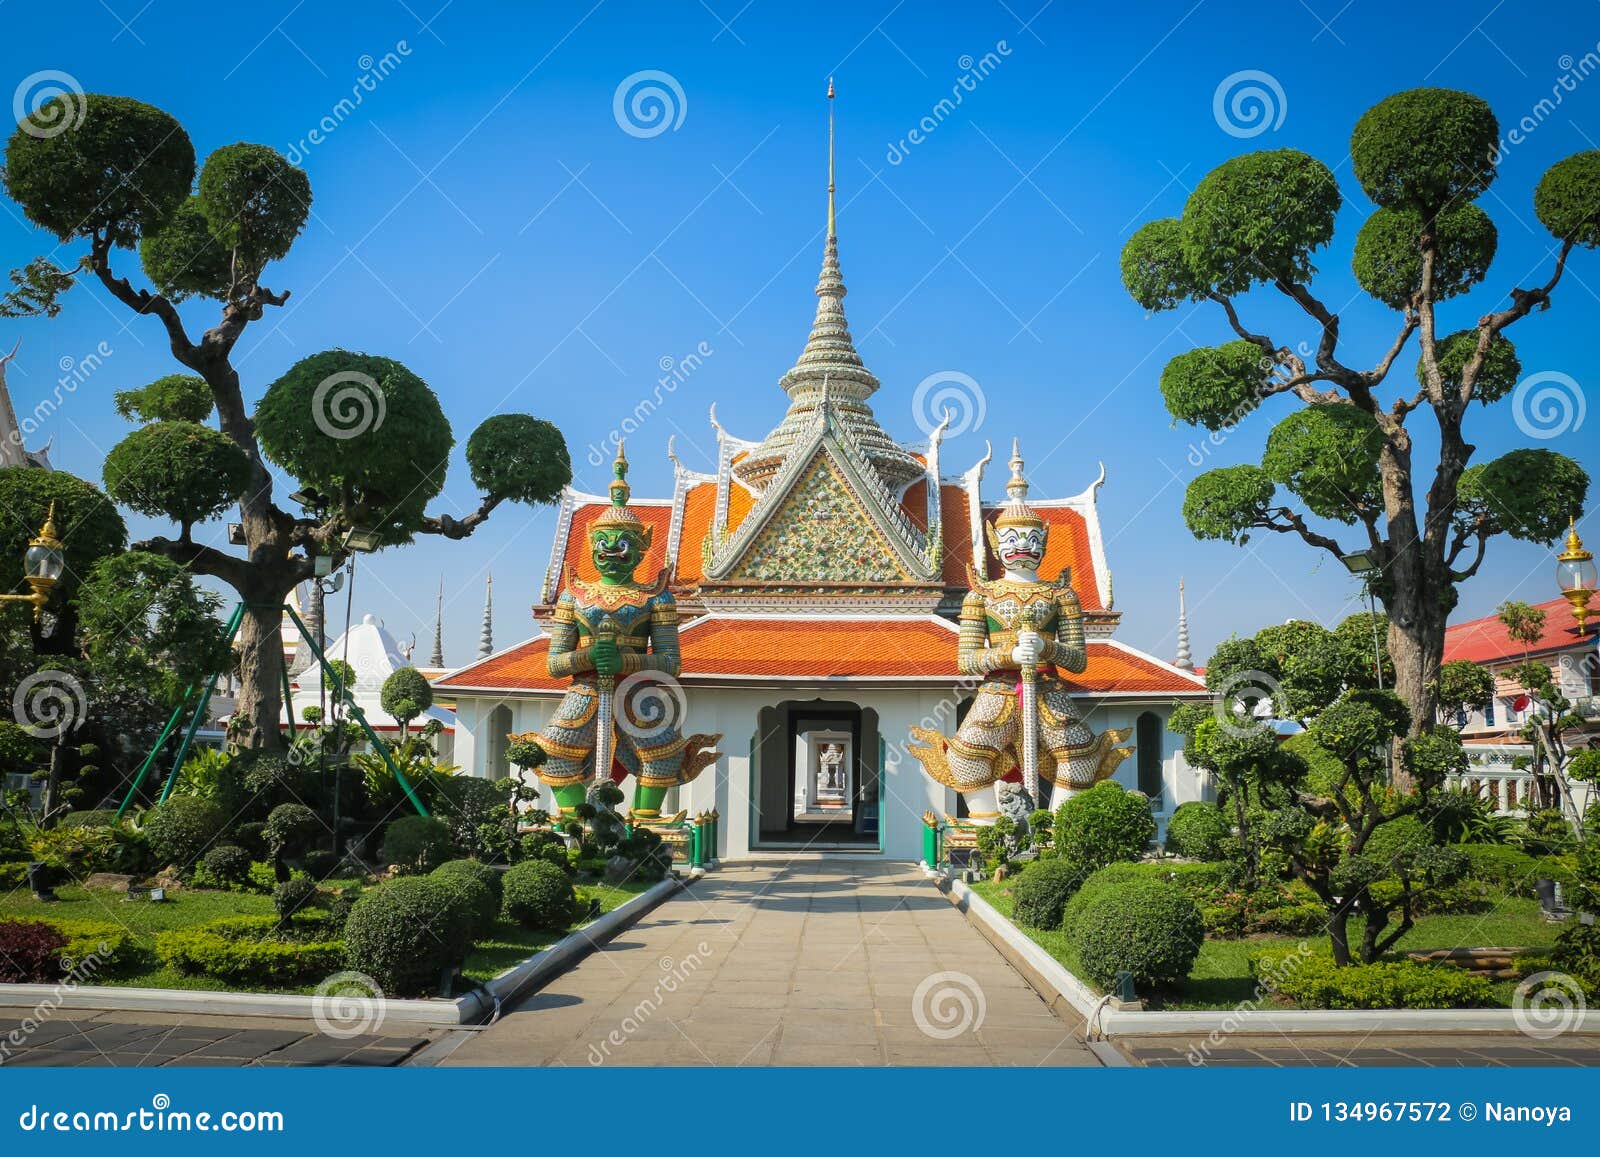 wat arun,temple of dawn,landmark famous temple of bangkok